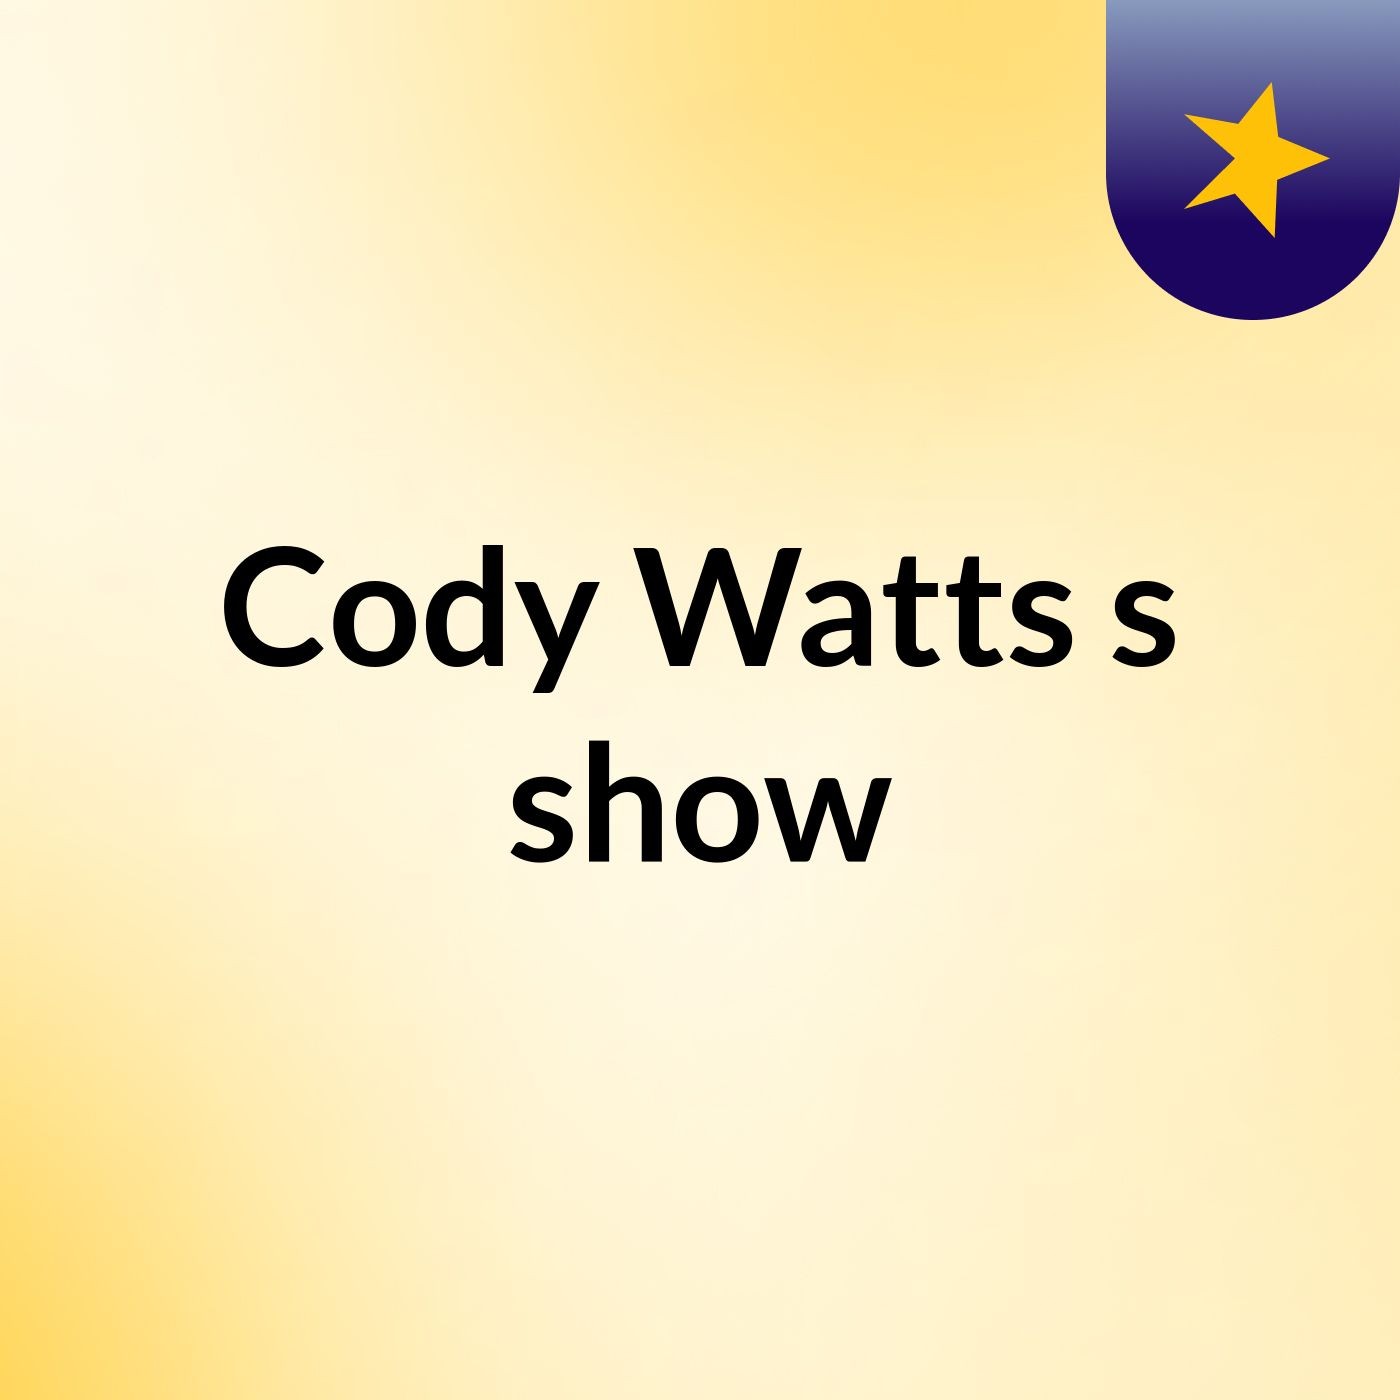 Cody Watts's show